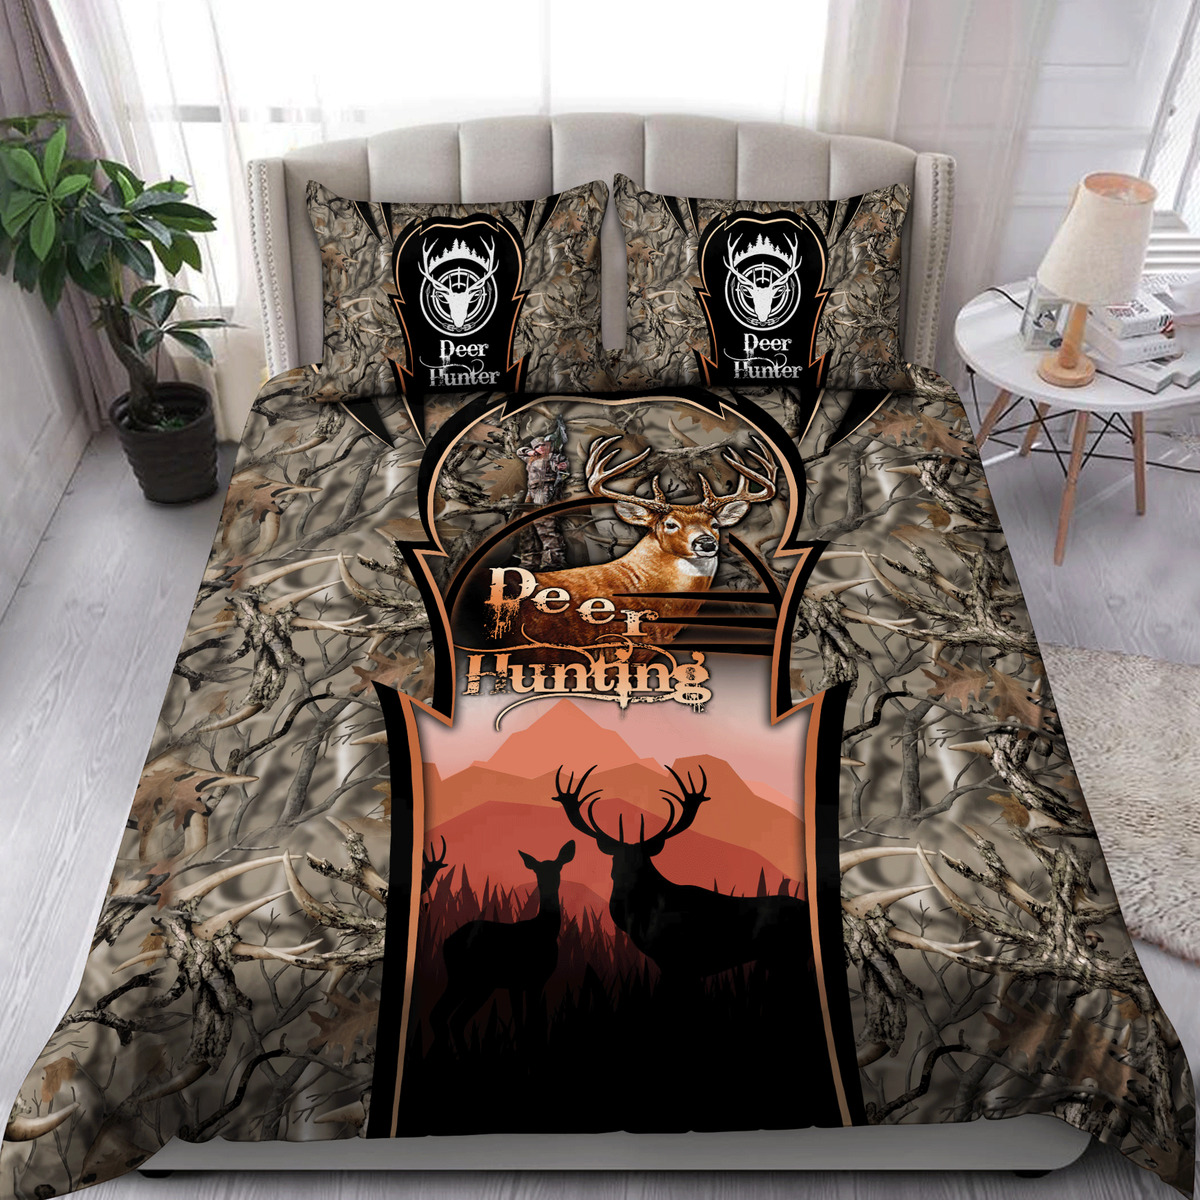 Beautiful Couple Deer Brown quilt Bedding Set - deer hunter camo quilt bed set Comforter Home Room Decoration